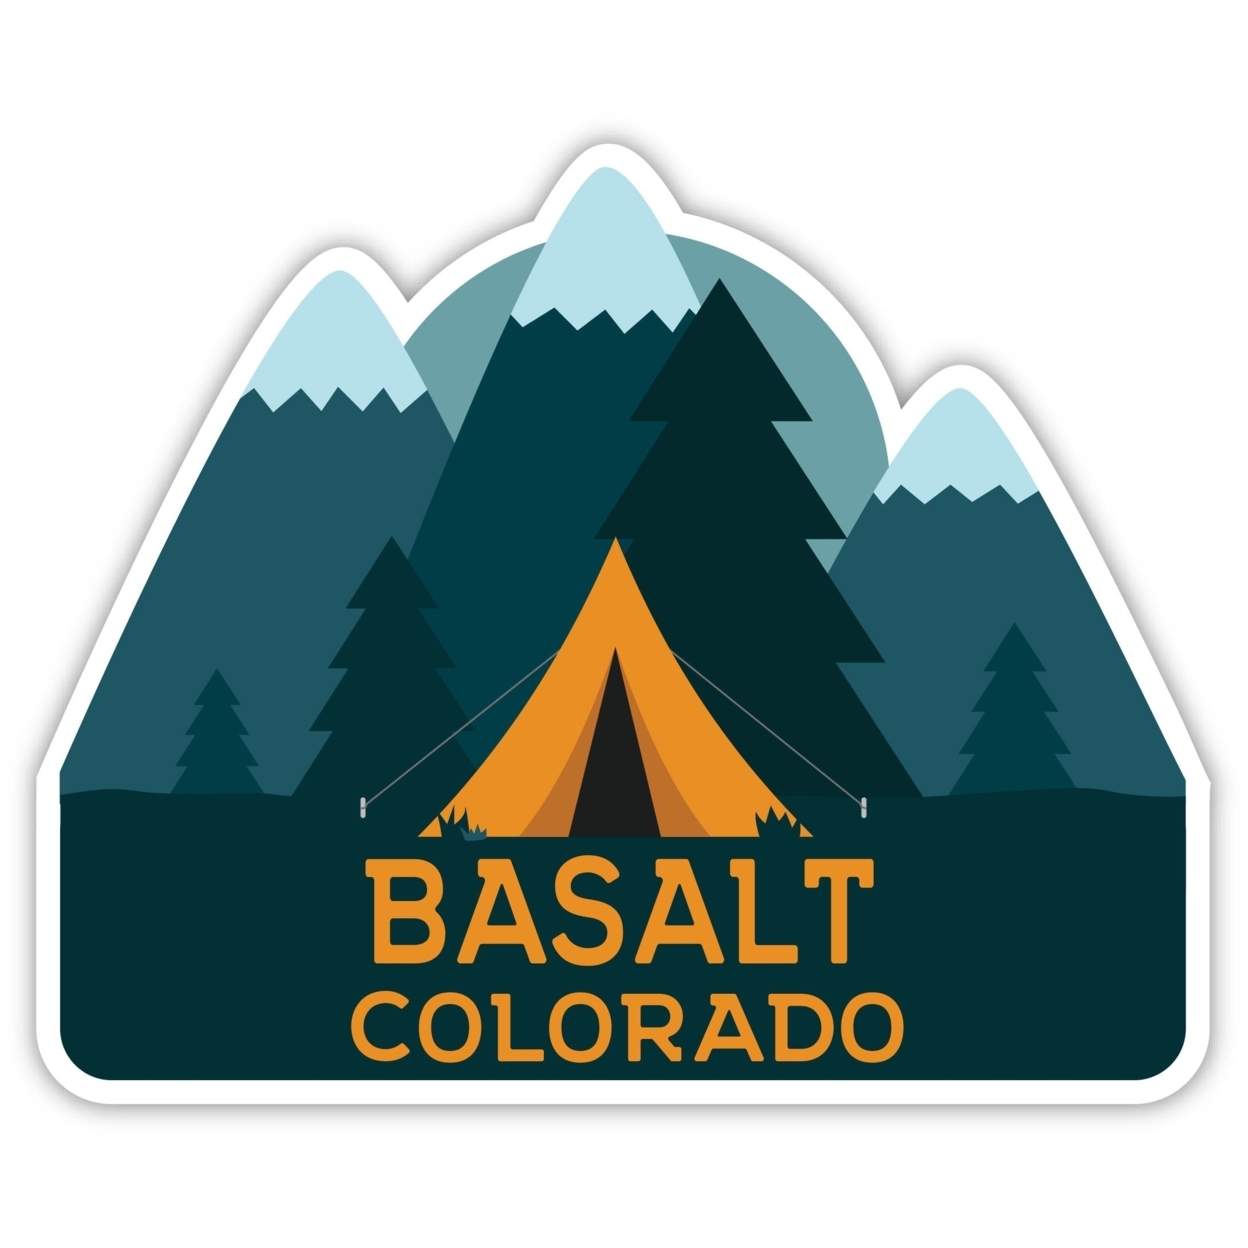 Basalt Colorado Souvenir Decorative Stickers (Choose Theme And Size) - Single Unit, 12-Inch, Tent